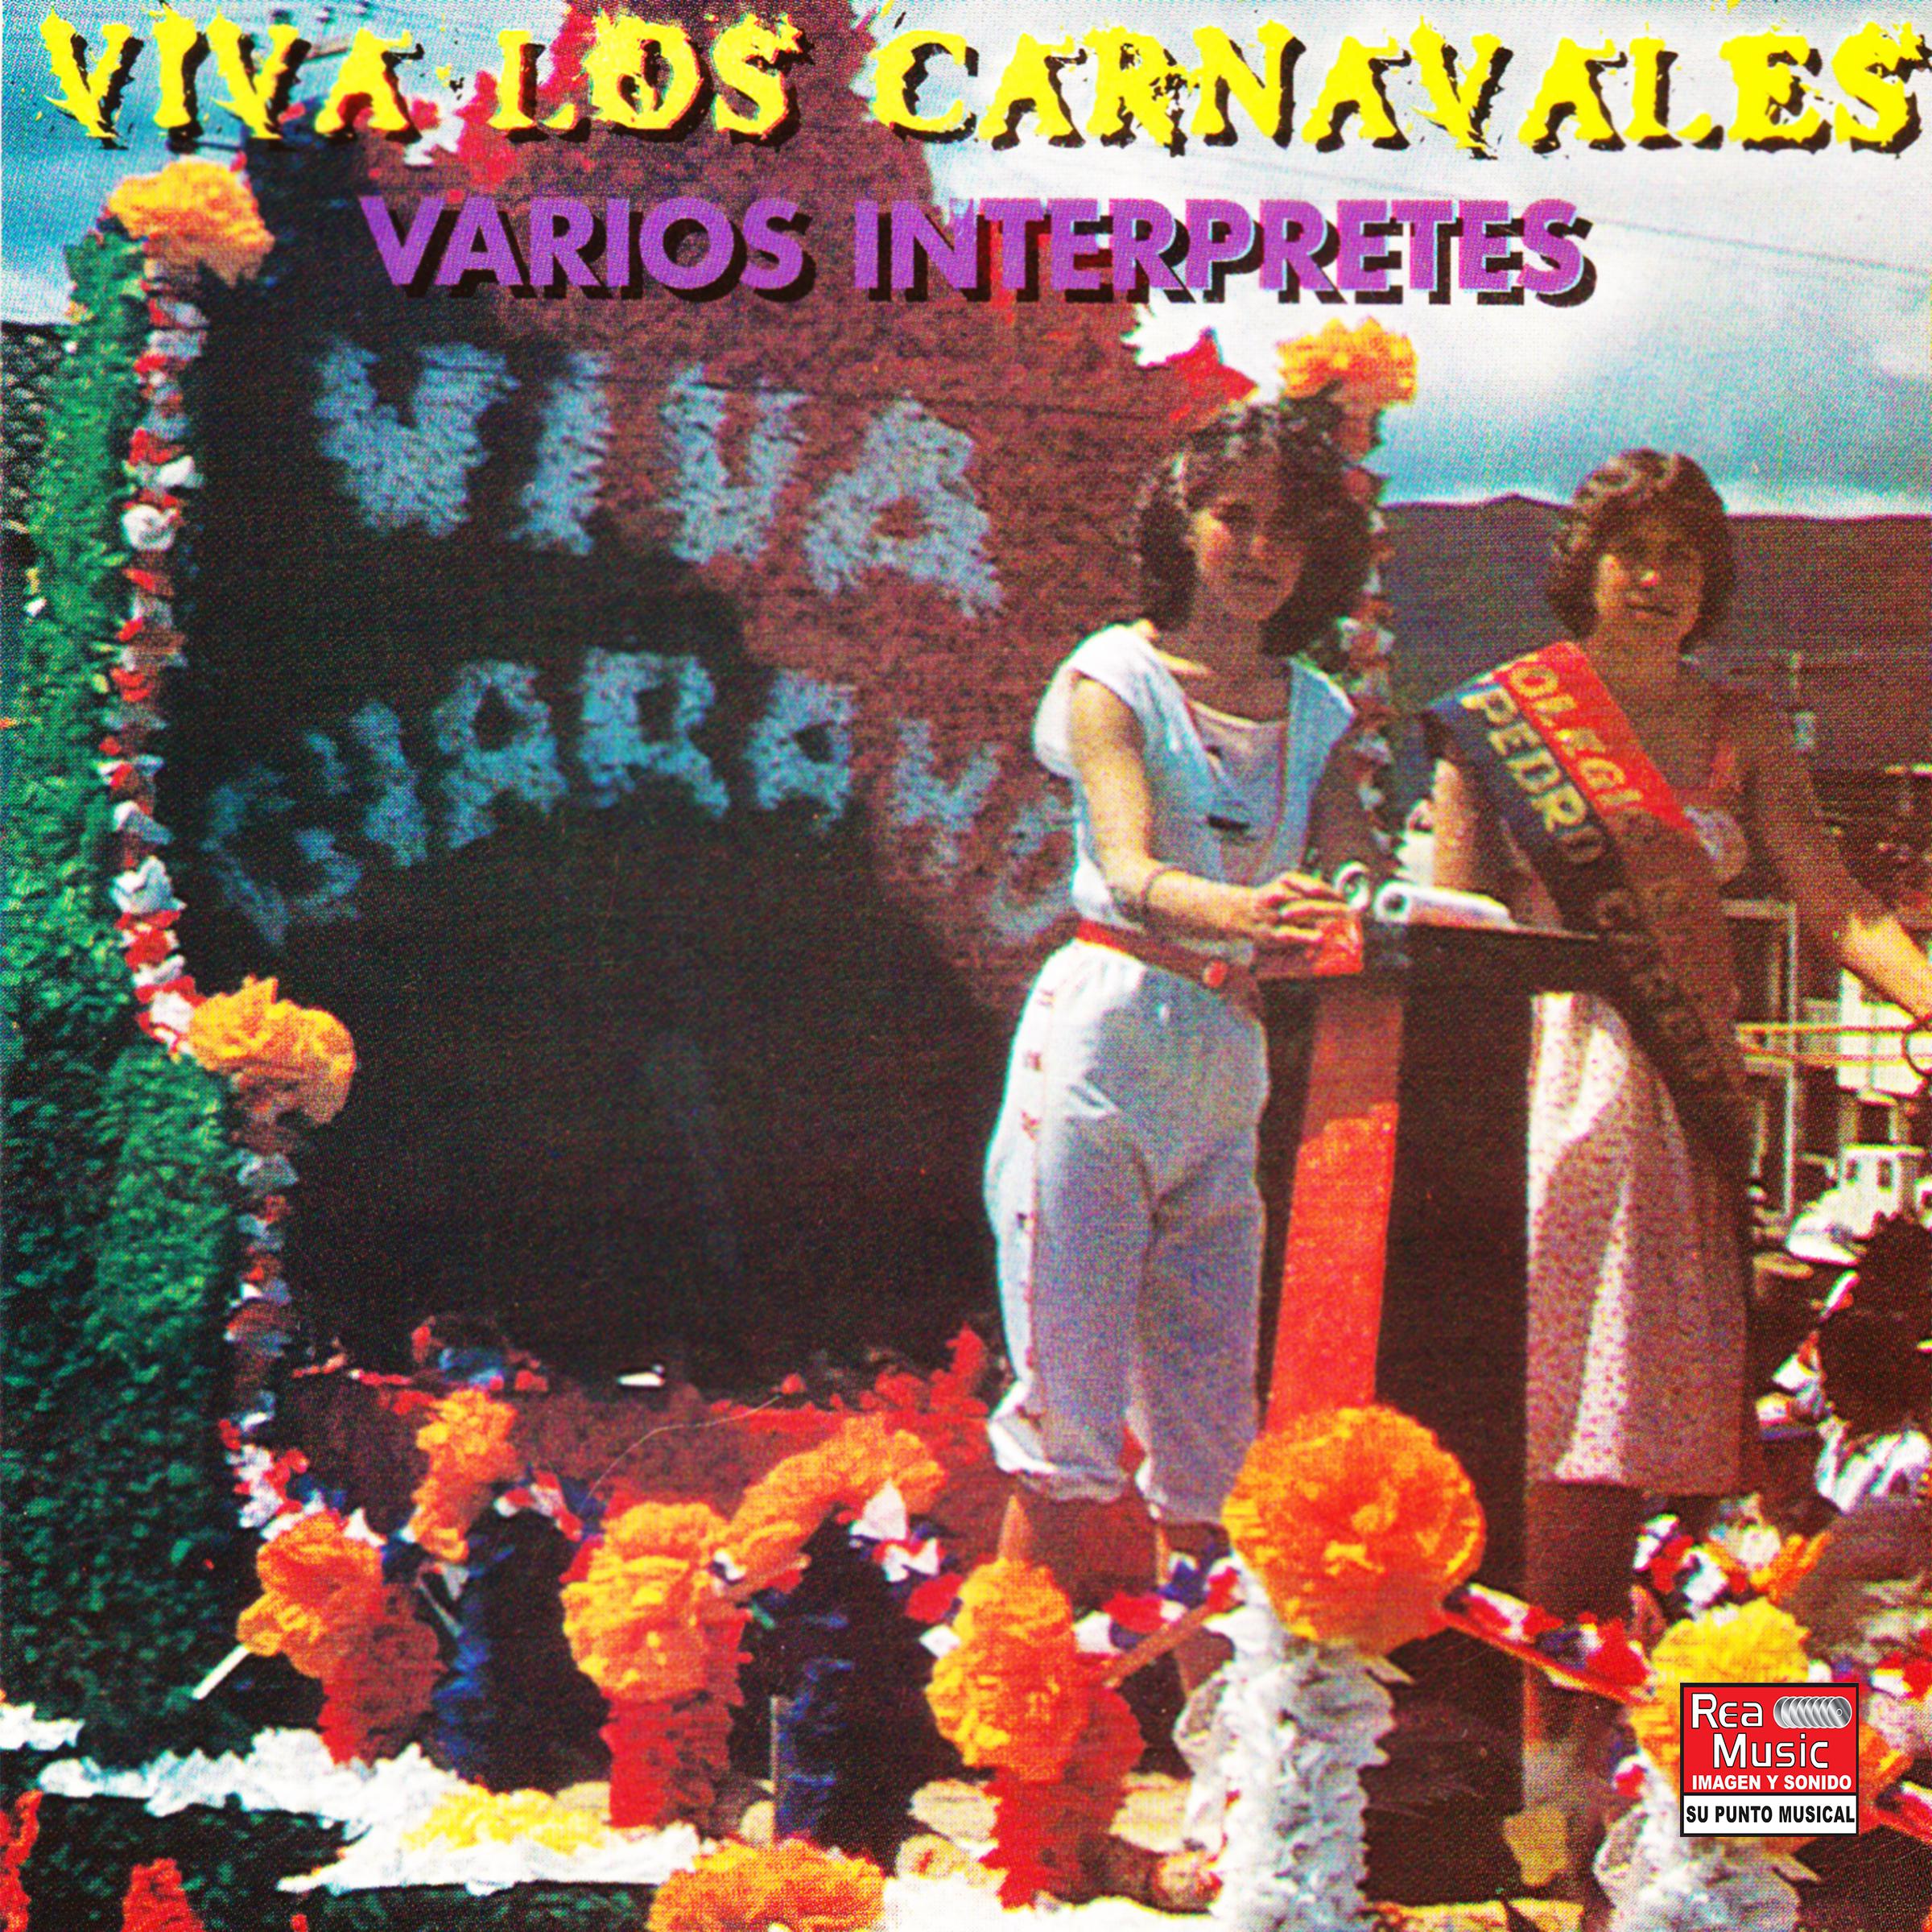 Picaresco Carnaval